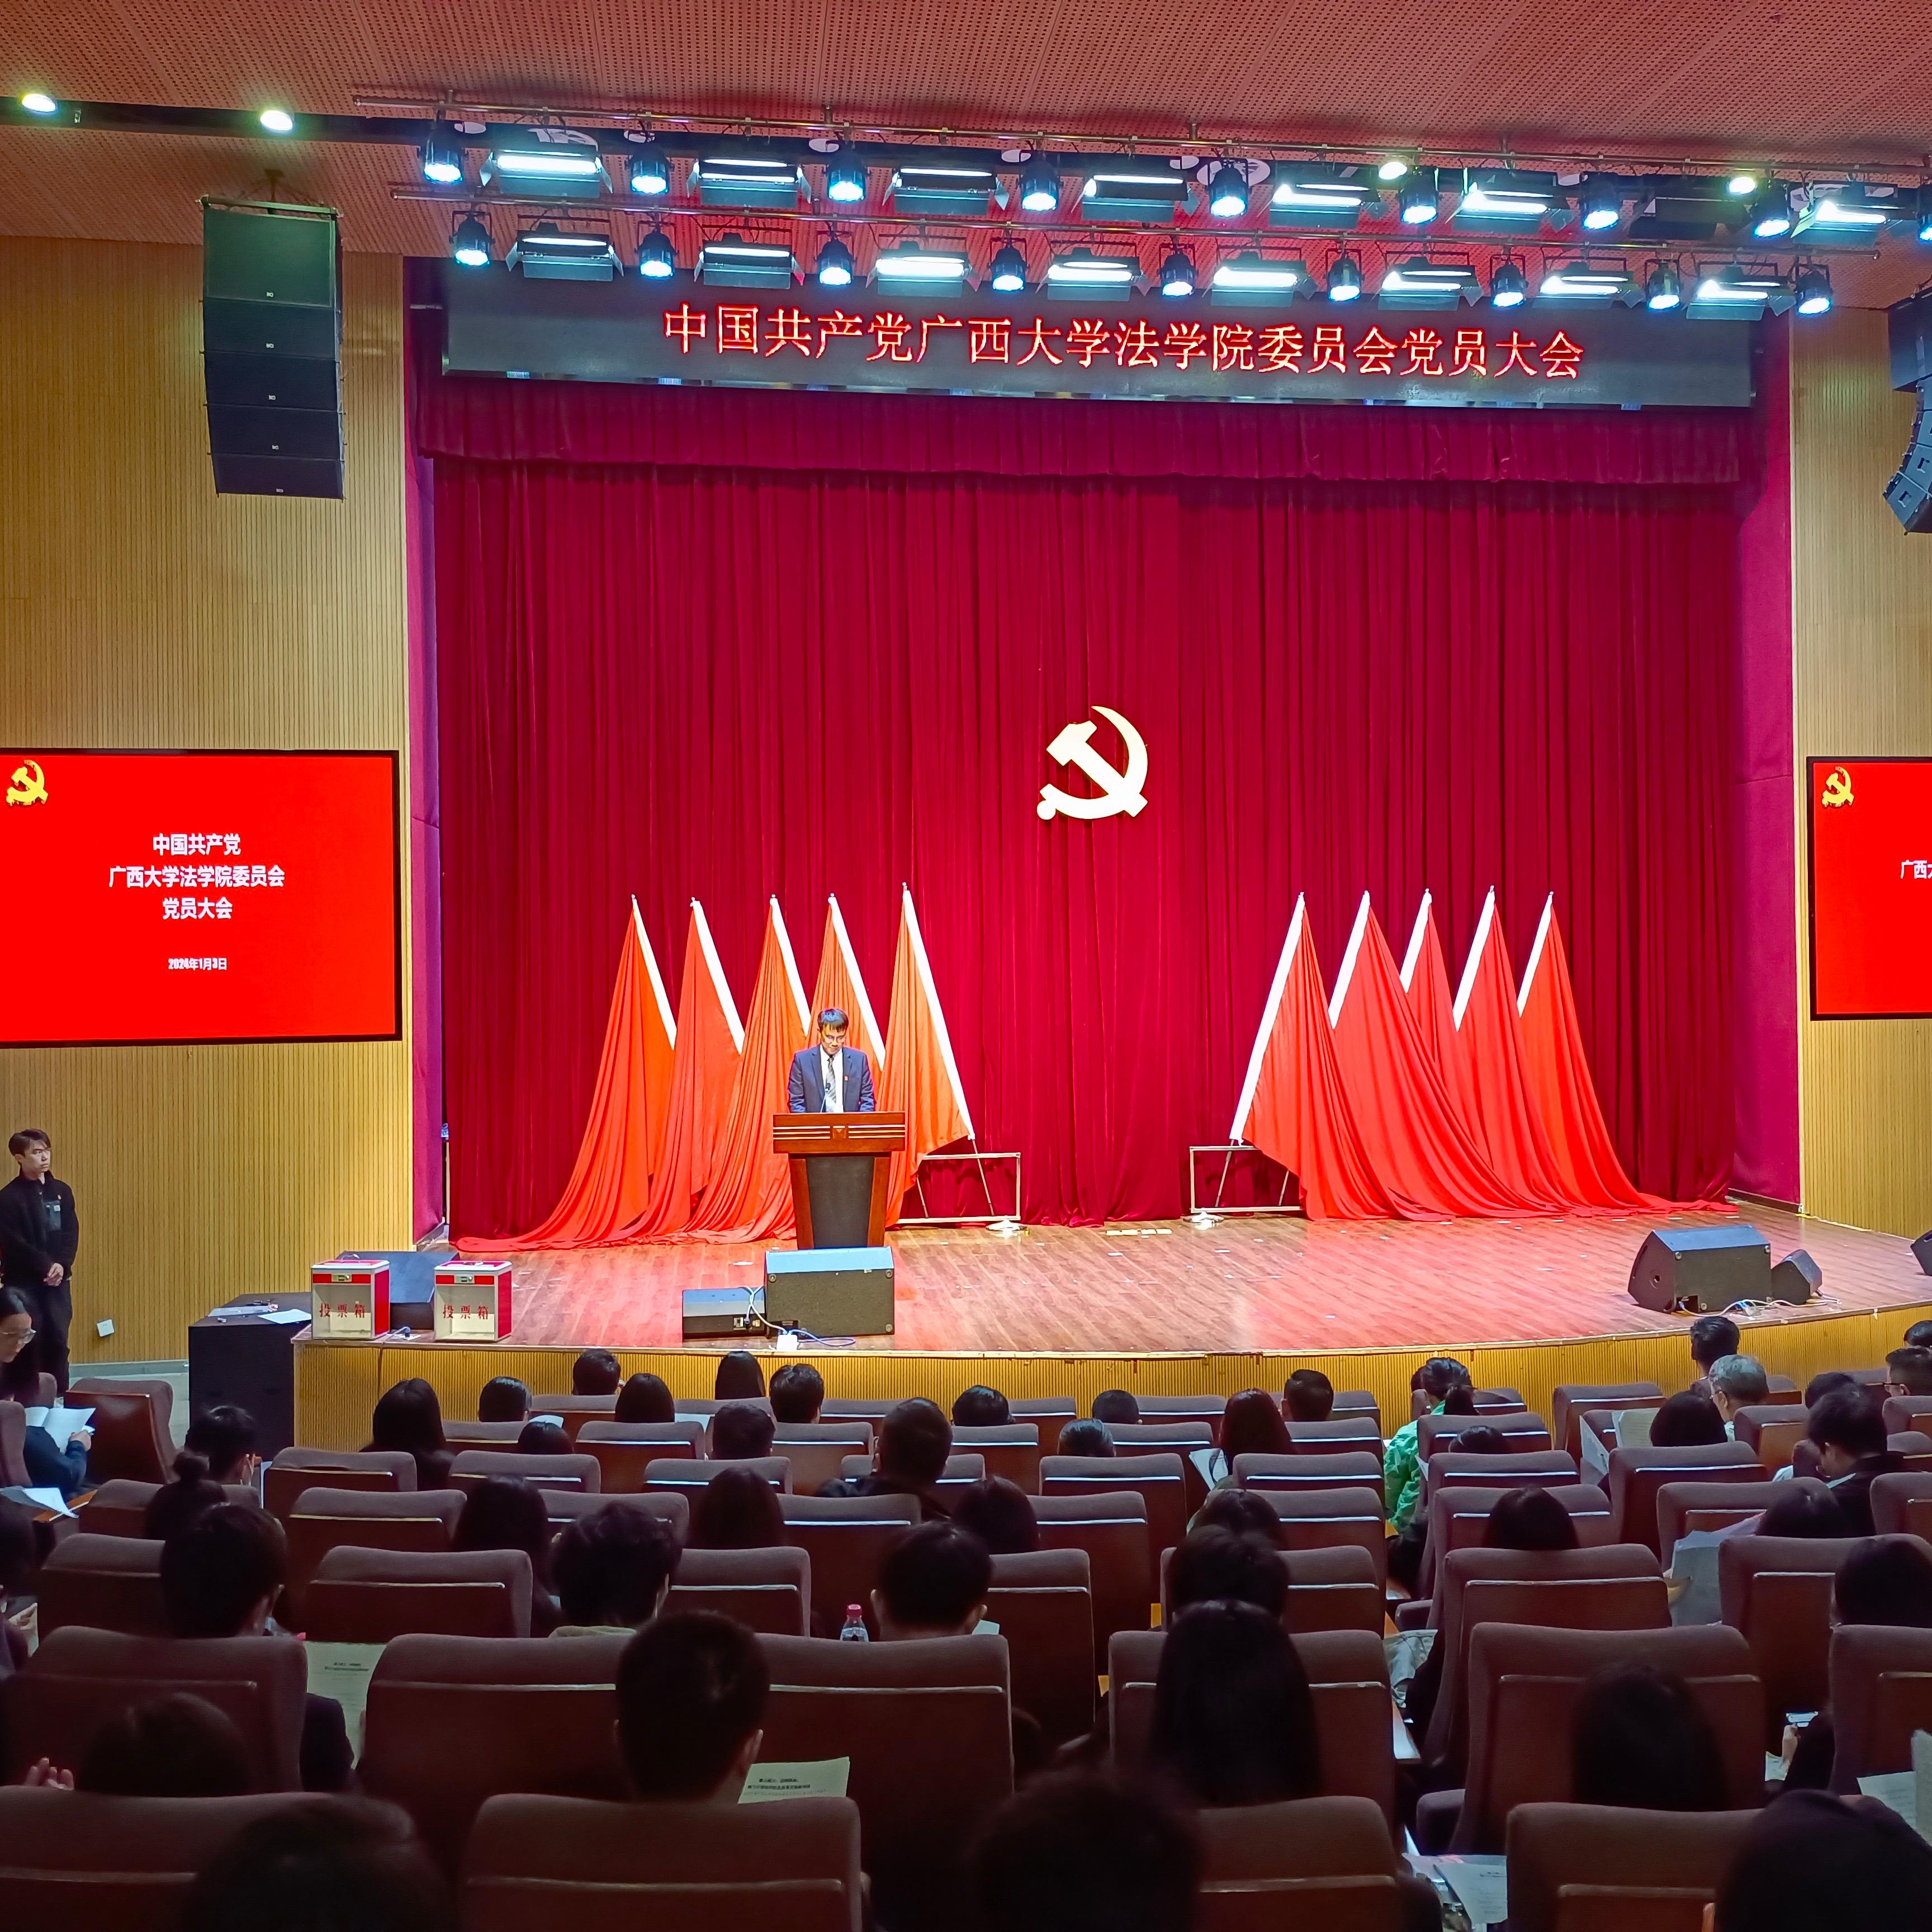 中国共产党太阳集团1088vip党员大会胜利召开